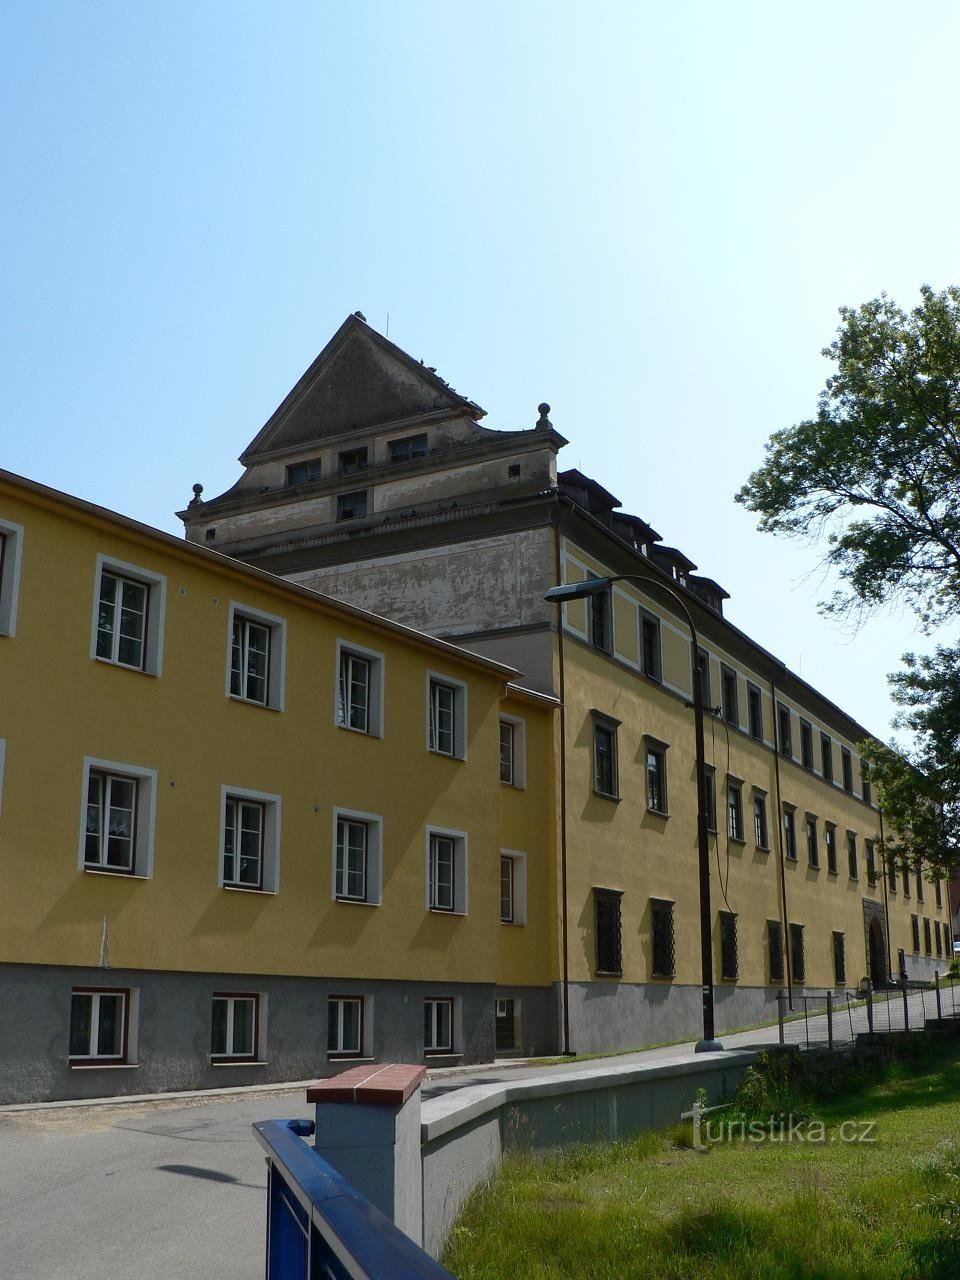 Strelské Hoštice, south wing of the castle